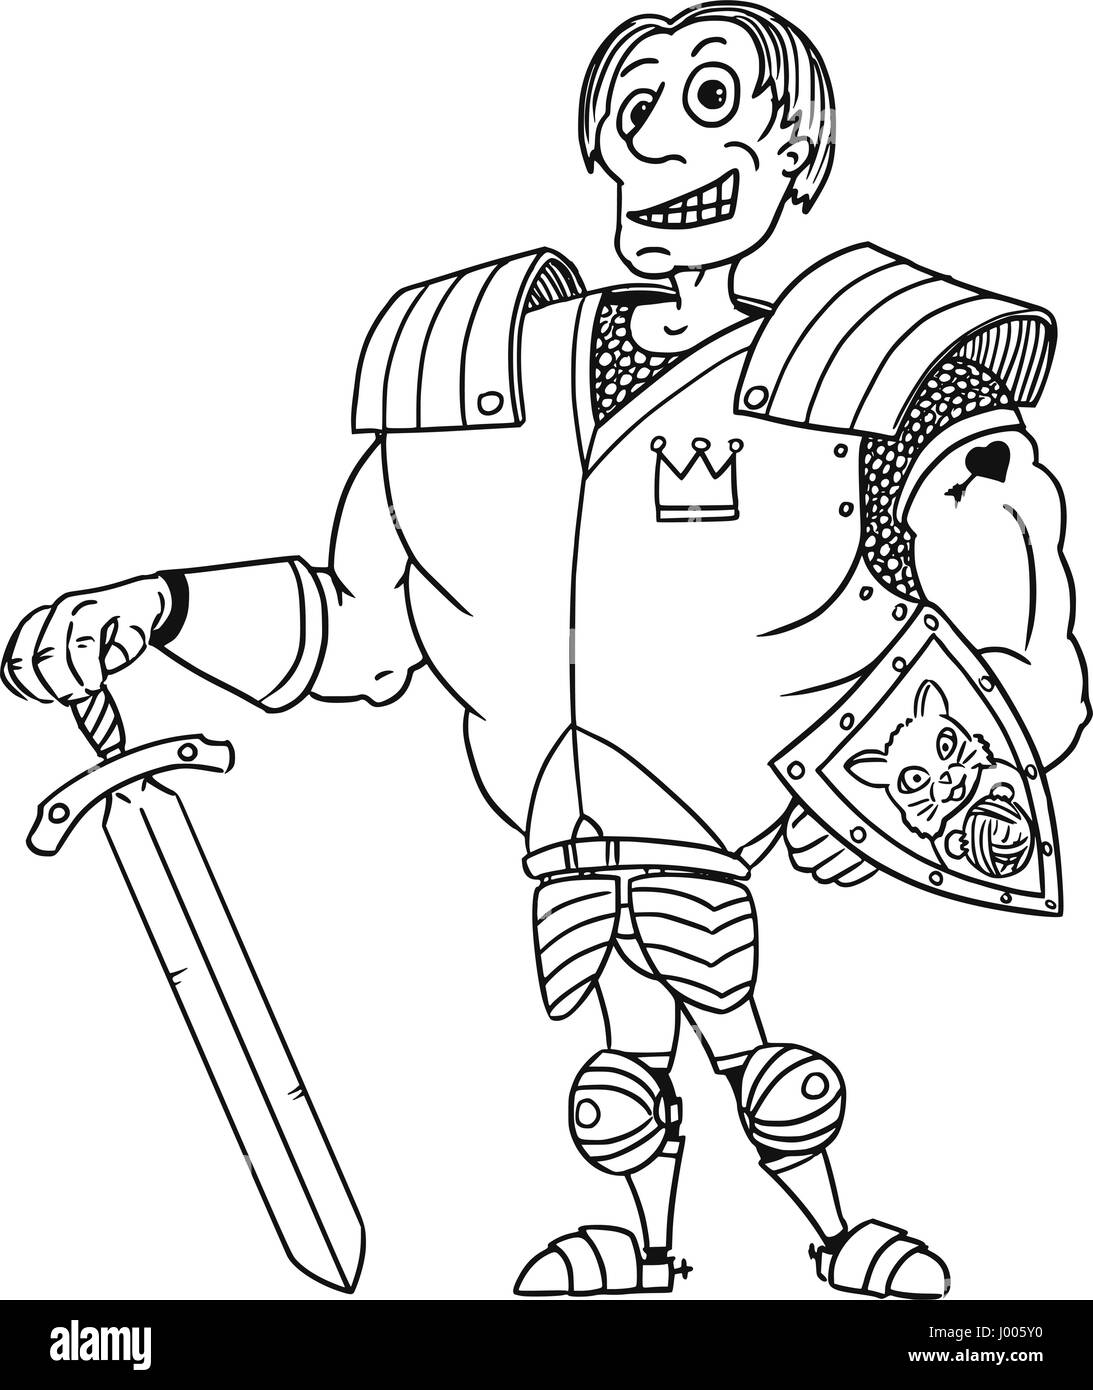 Cartoon vectores reales medievales fantasía antiguo Príncipe Encantador héroe caballero con armadura, espada, escudo y sonrisa Ilustración del Vector